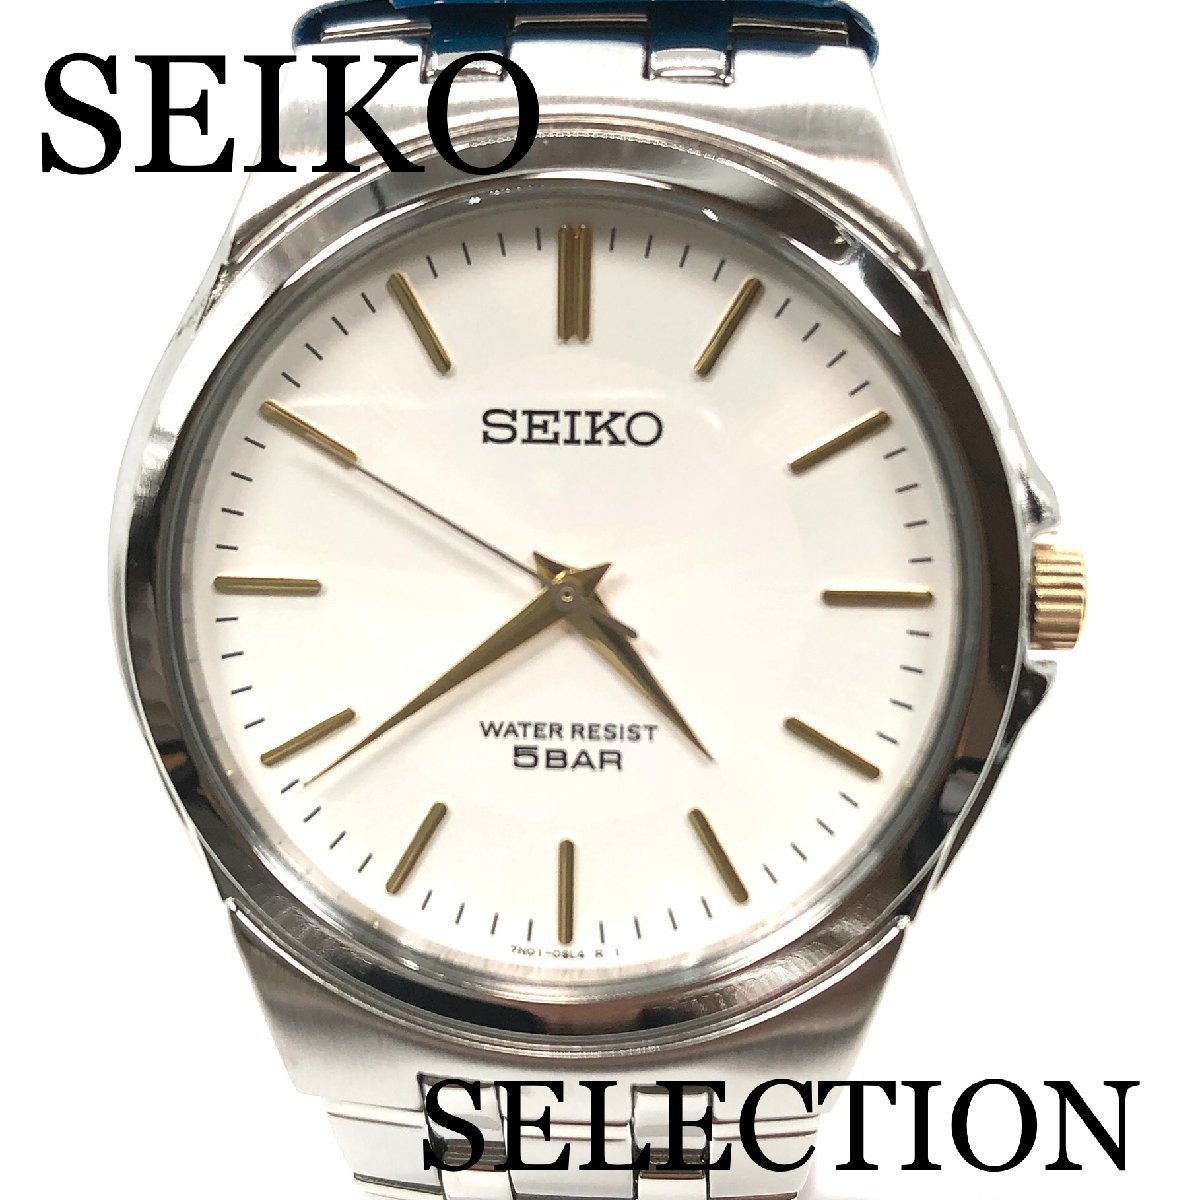 新品正規品『SEIKO SELECTION』セイコー セレクション 薄型腕時計 メンズ SCXP025【送料無料】